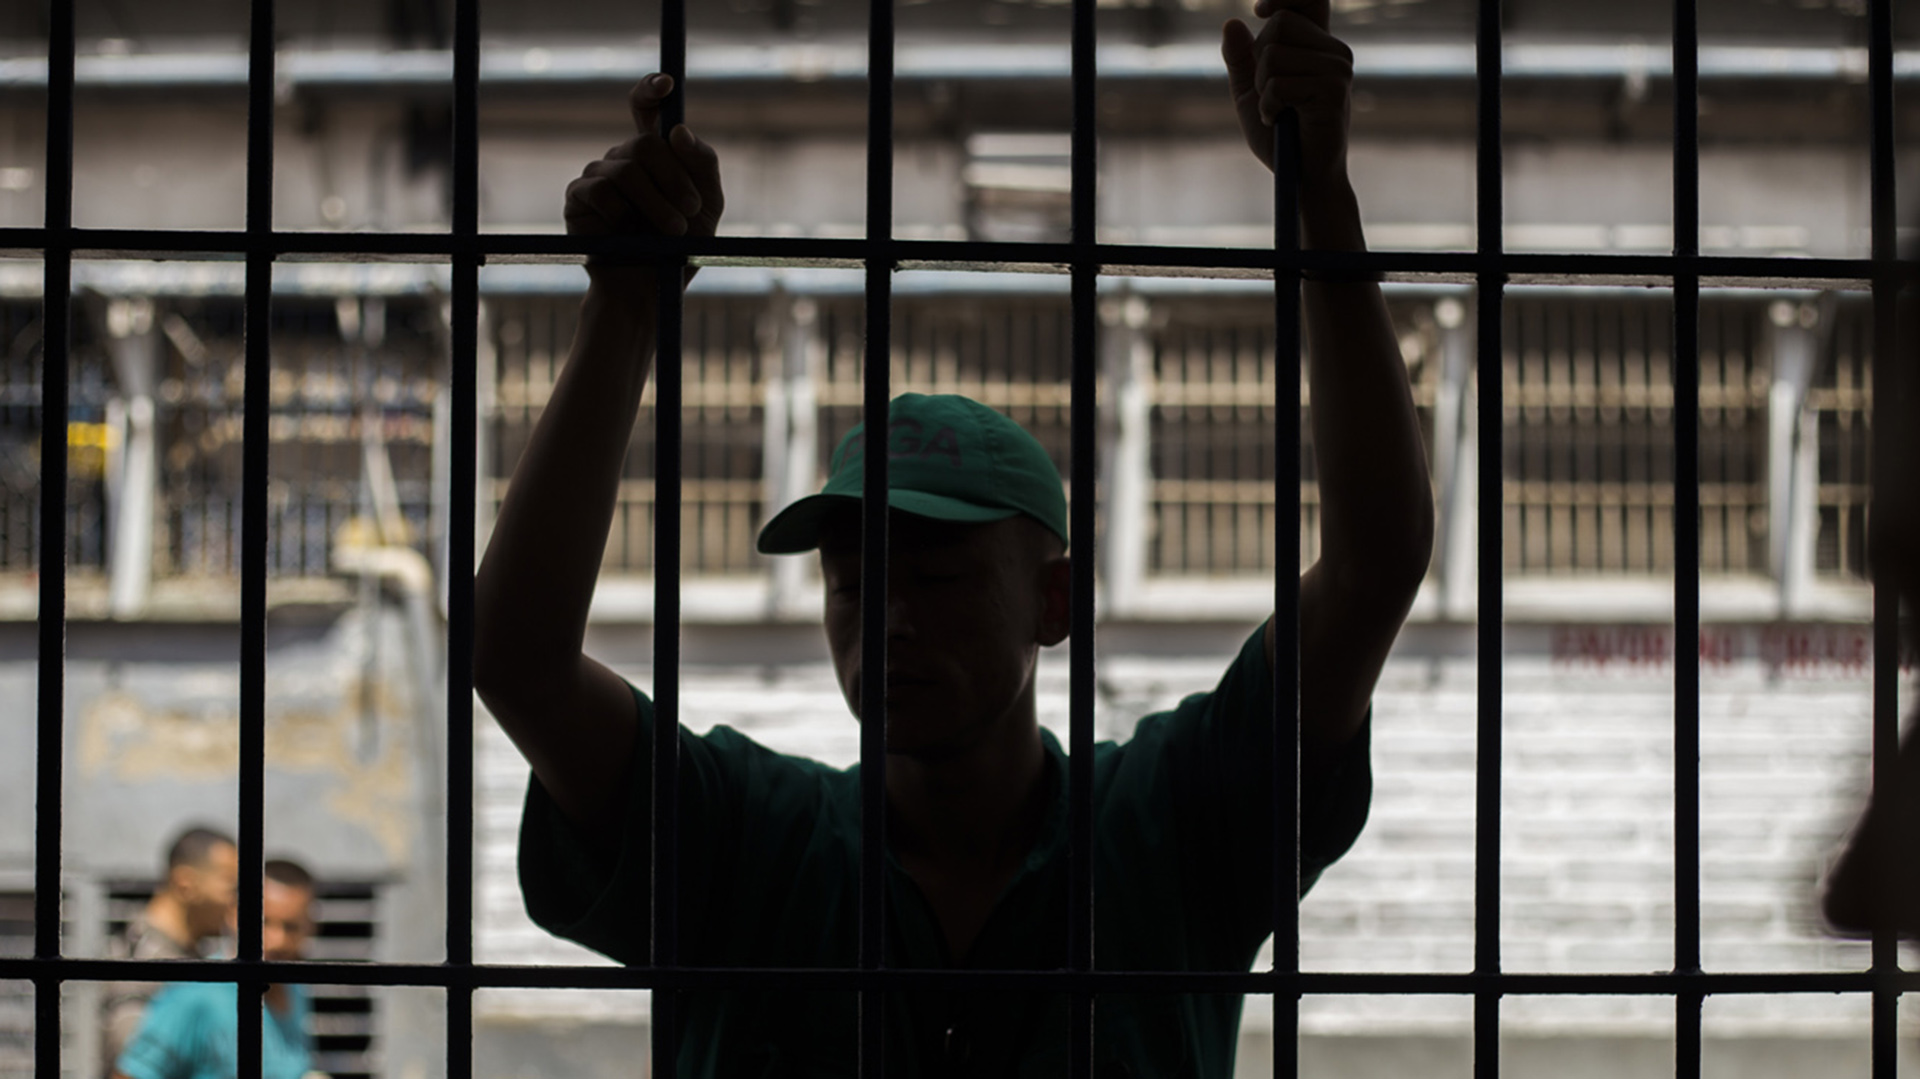 El alto tribunal hizo este llamado con base en la crisis que afecta al sistema penitenciario y los centros de detención transitoria en Colombia.
Archivo.